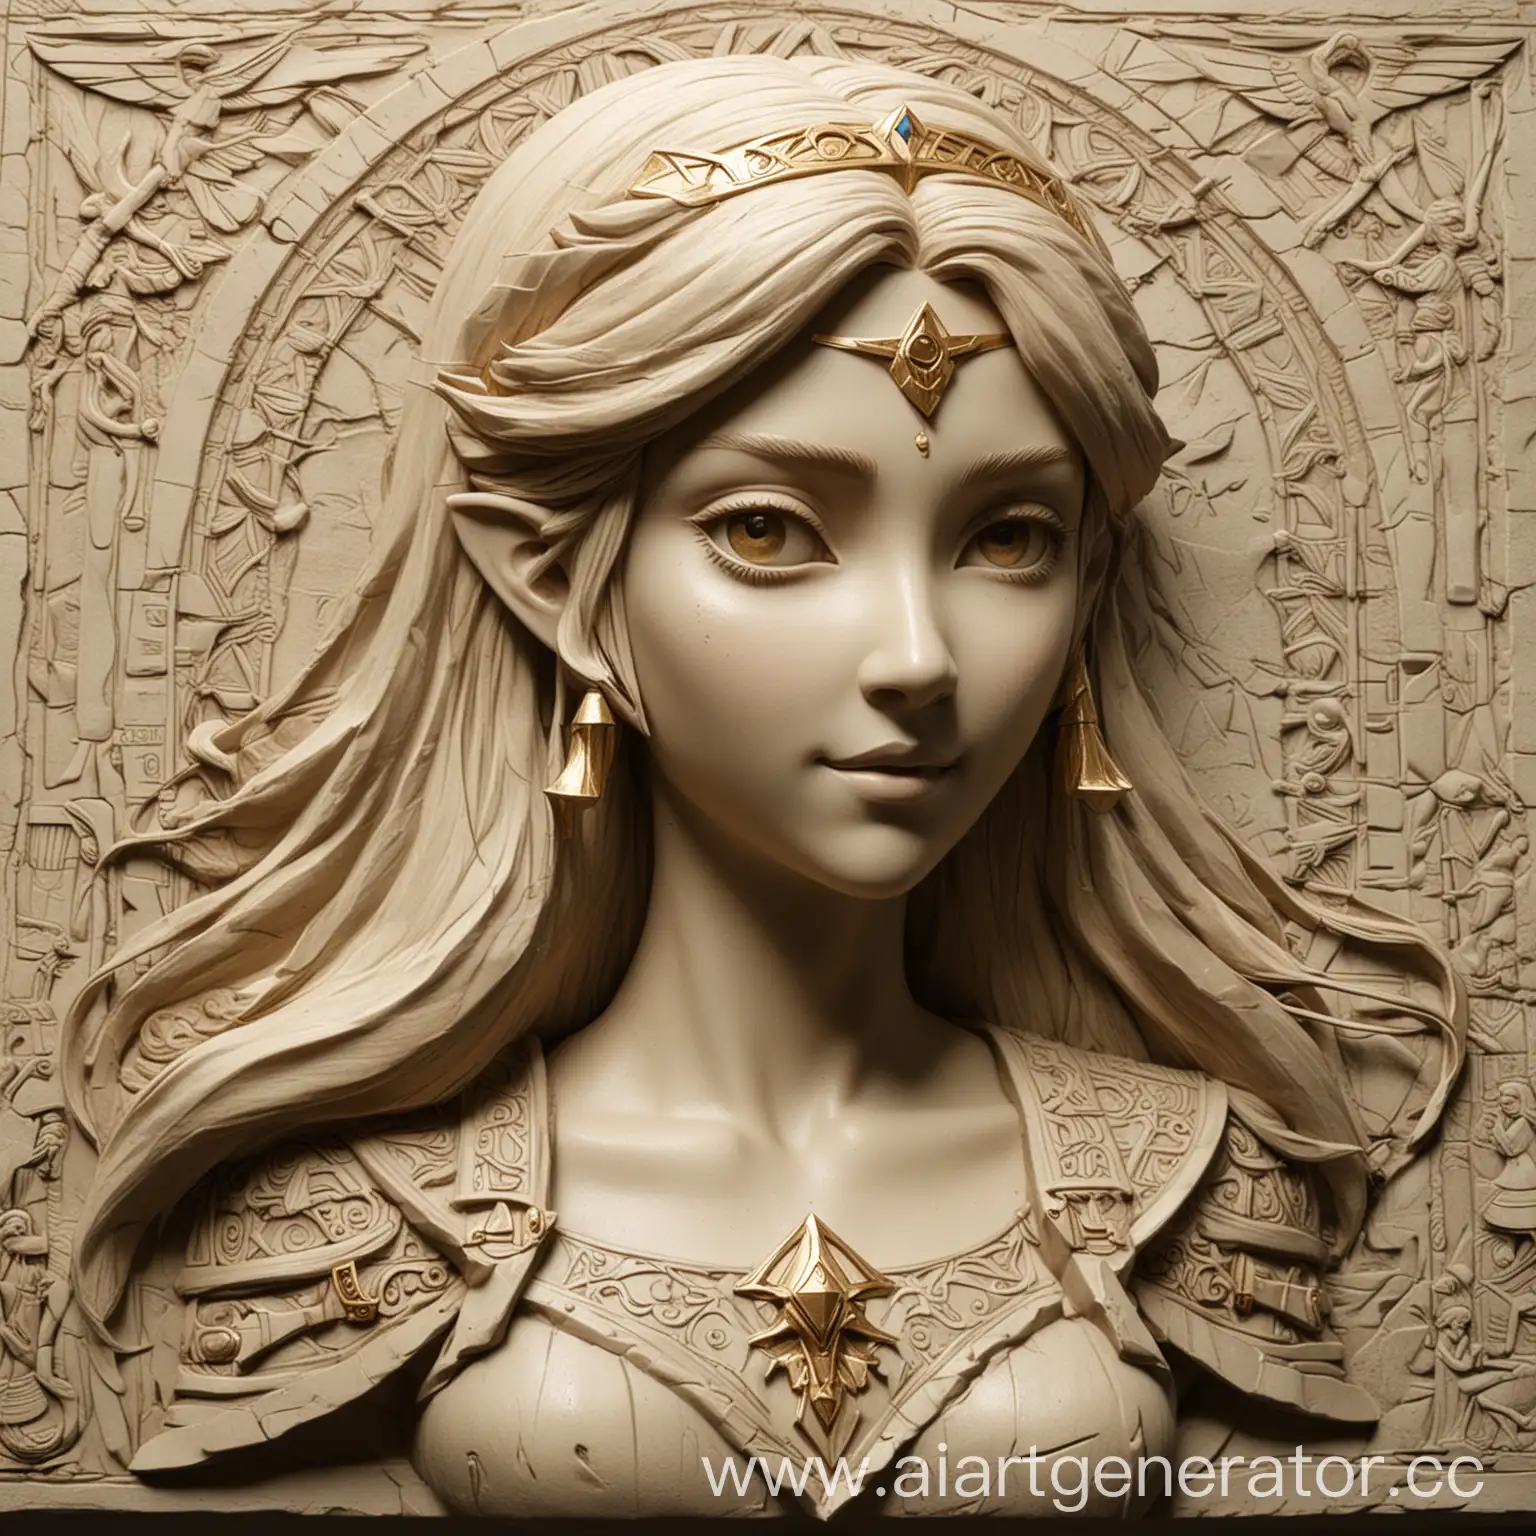 Princess-Zelda-BasRelief-Sculpture-in-Classic-BasRelief-Style